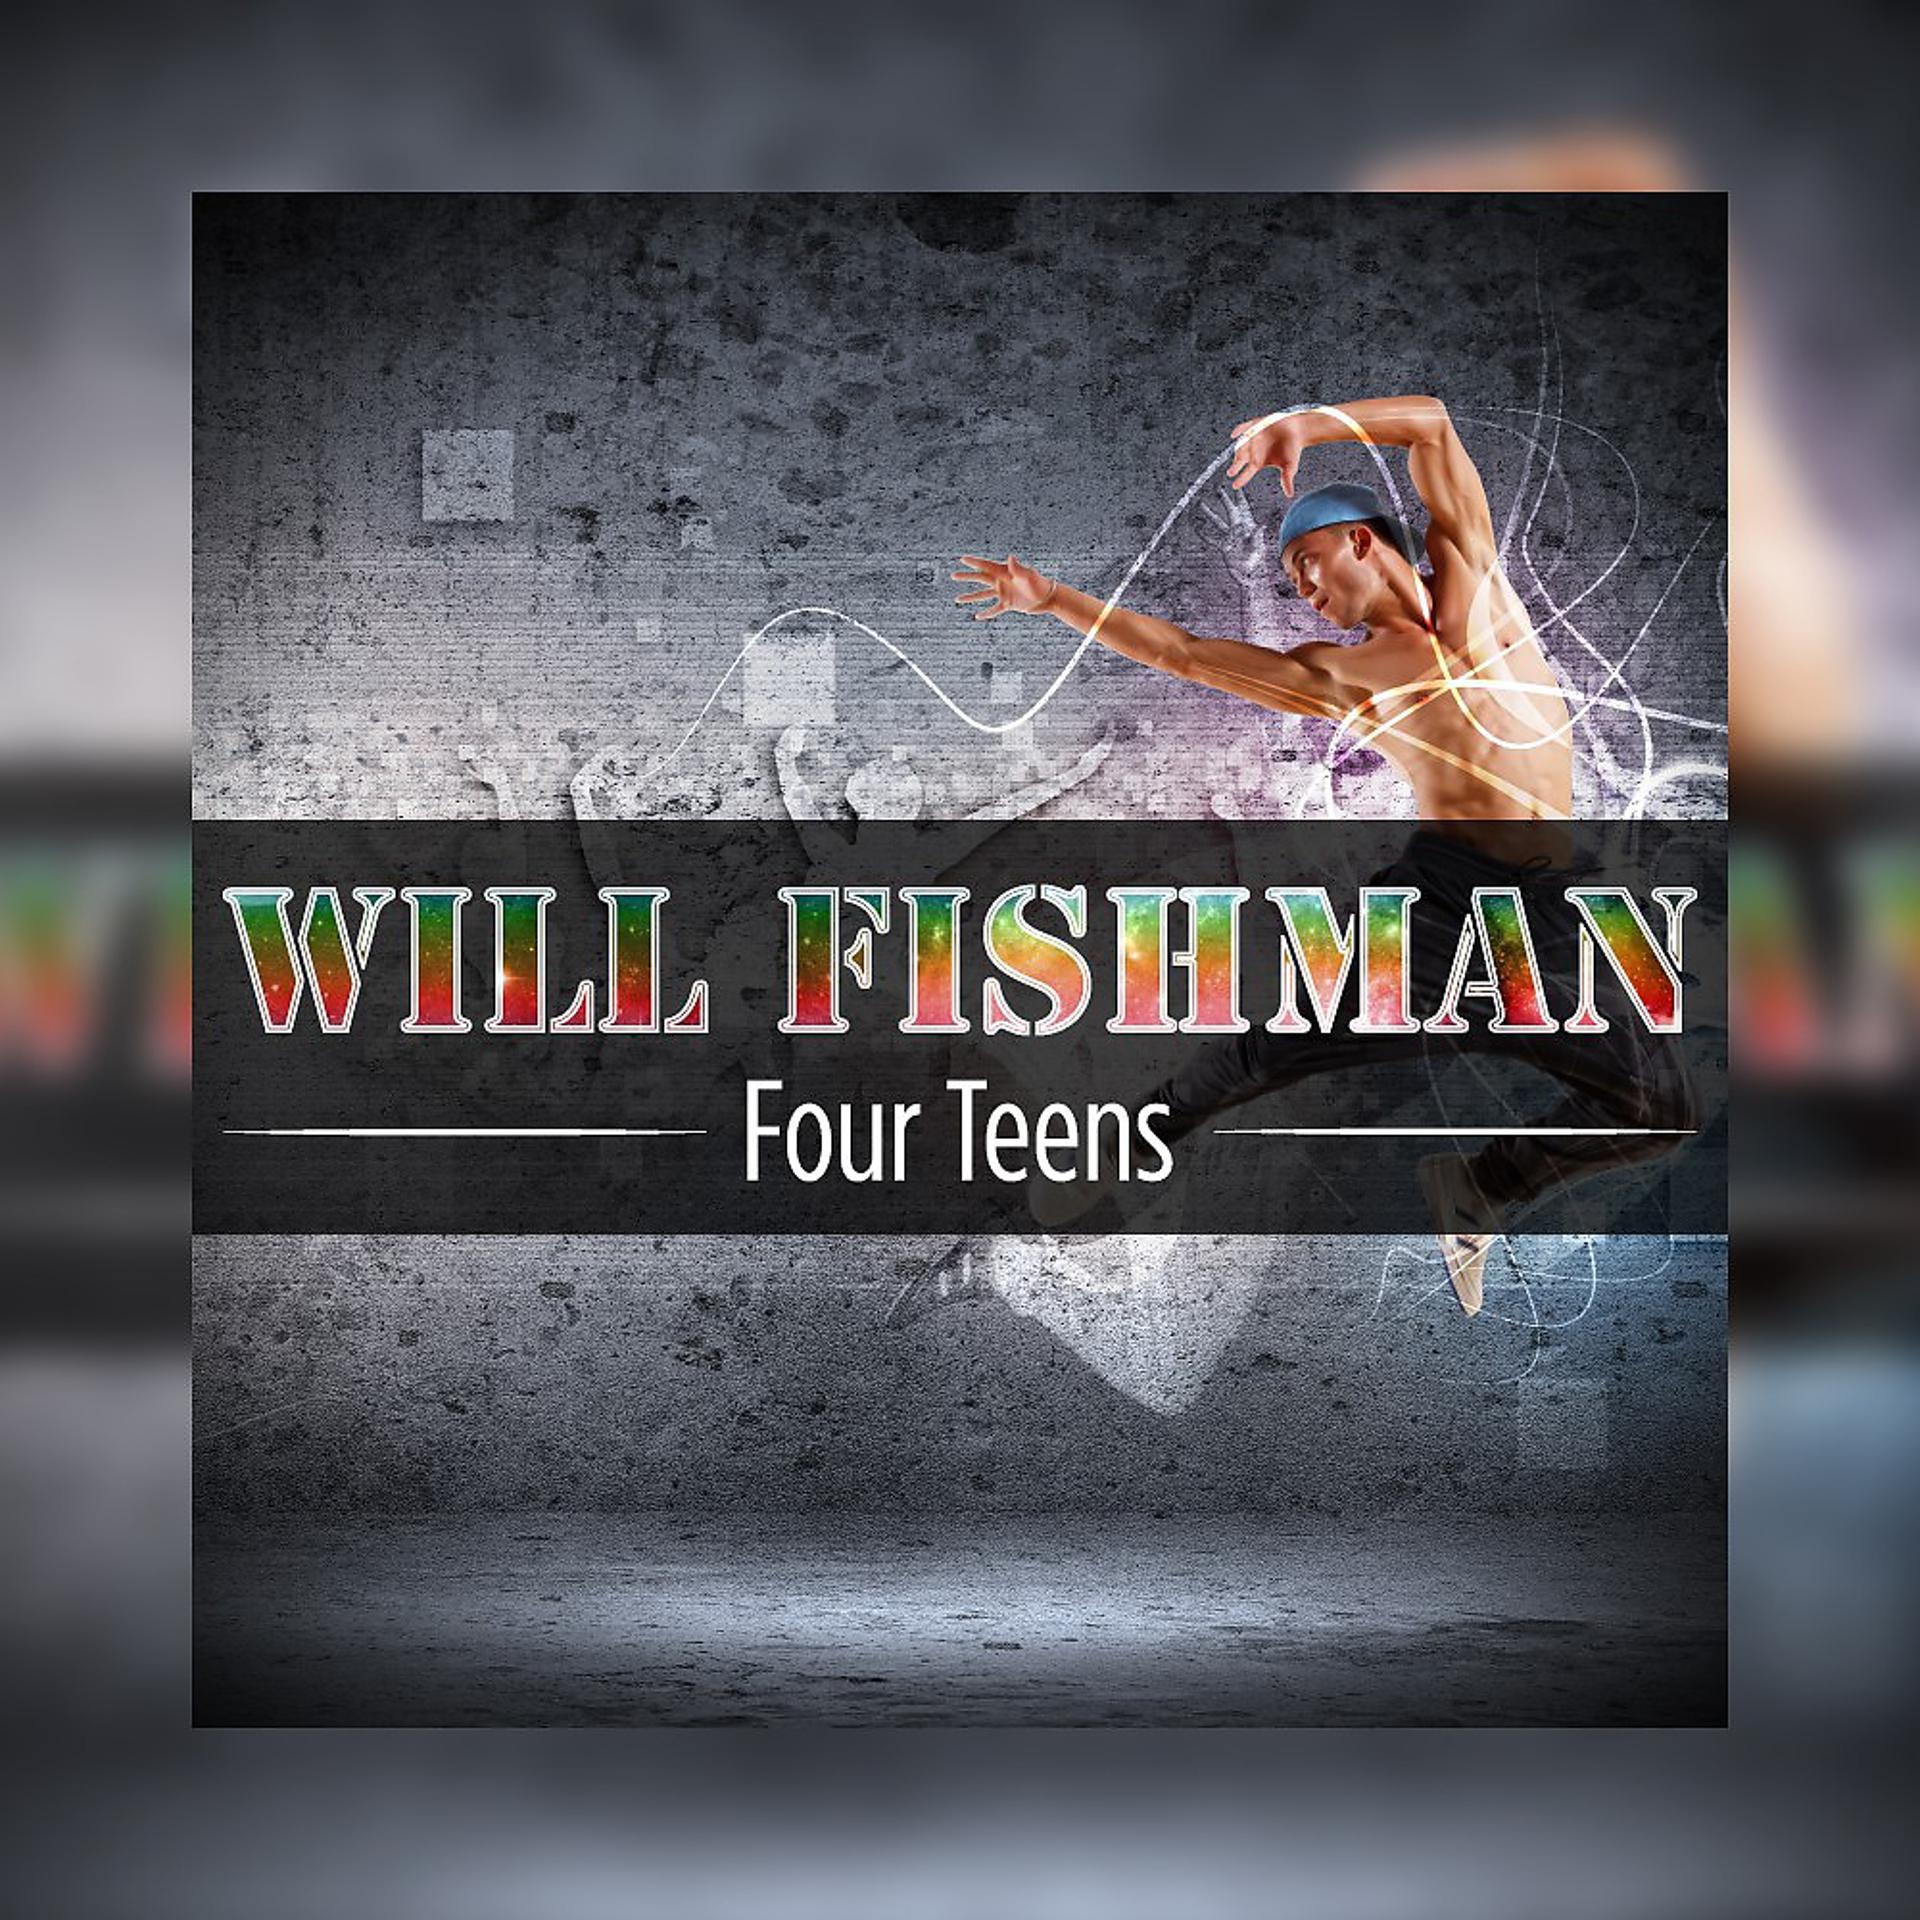 Альбомы Фишмен. Fishmans album. Sport a4 albom. 4 альбом песен